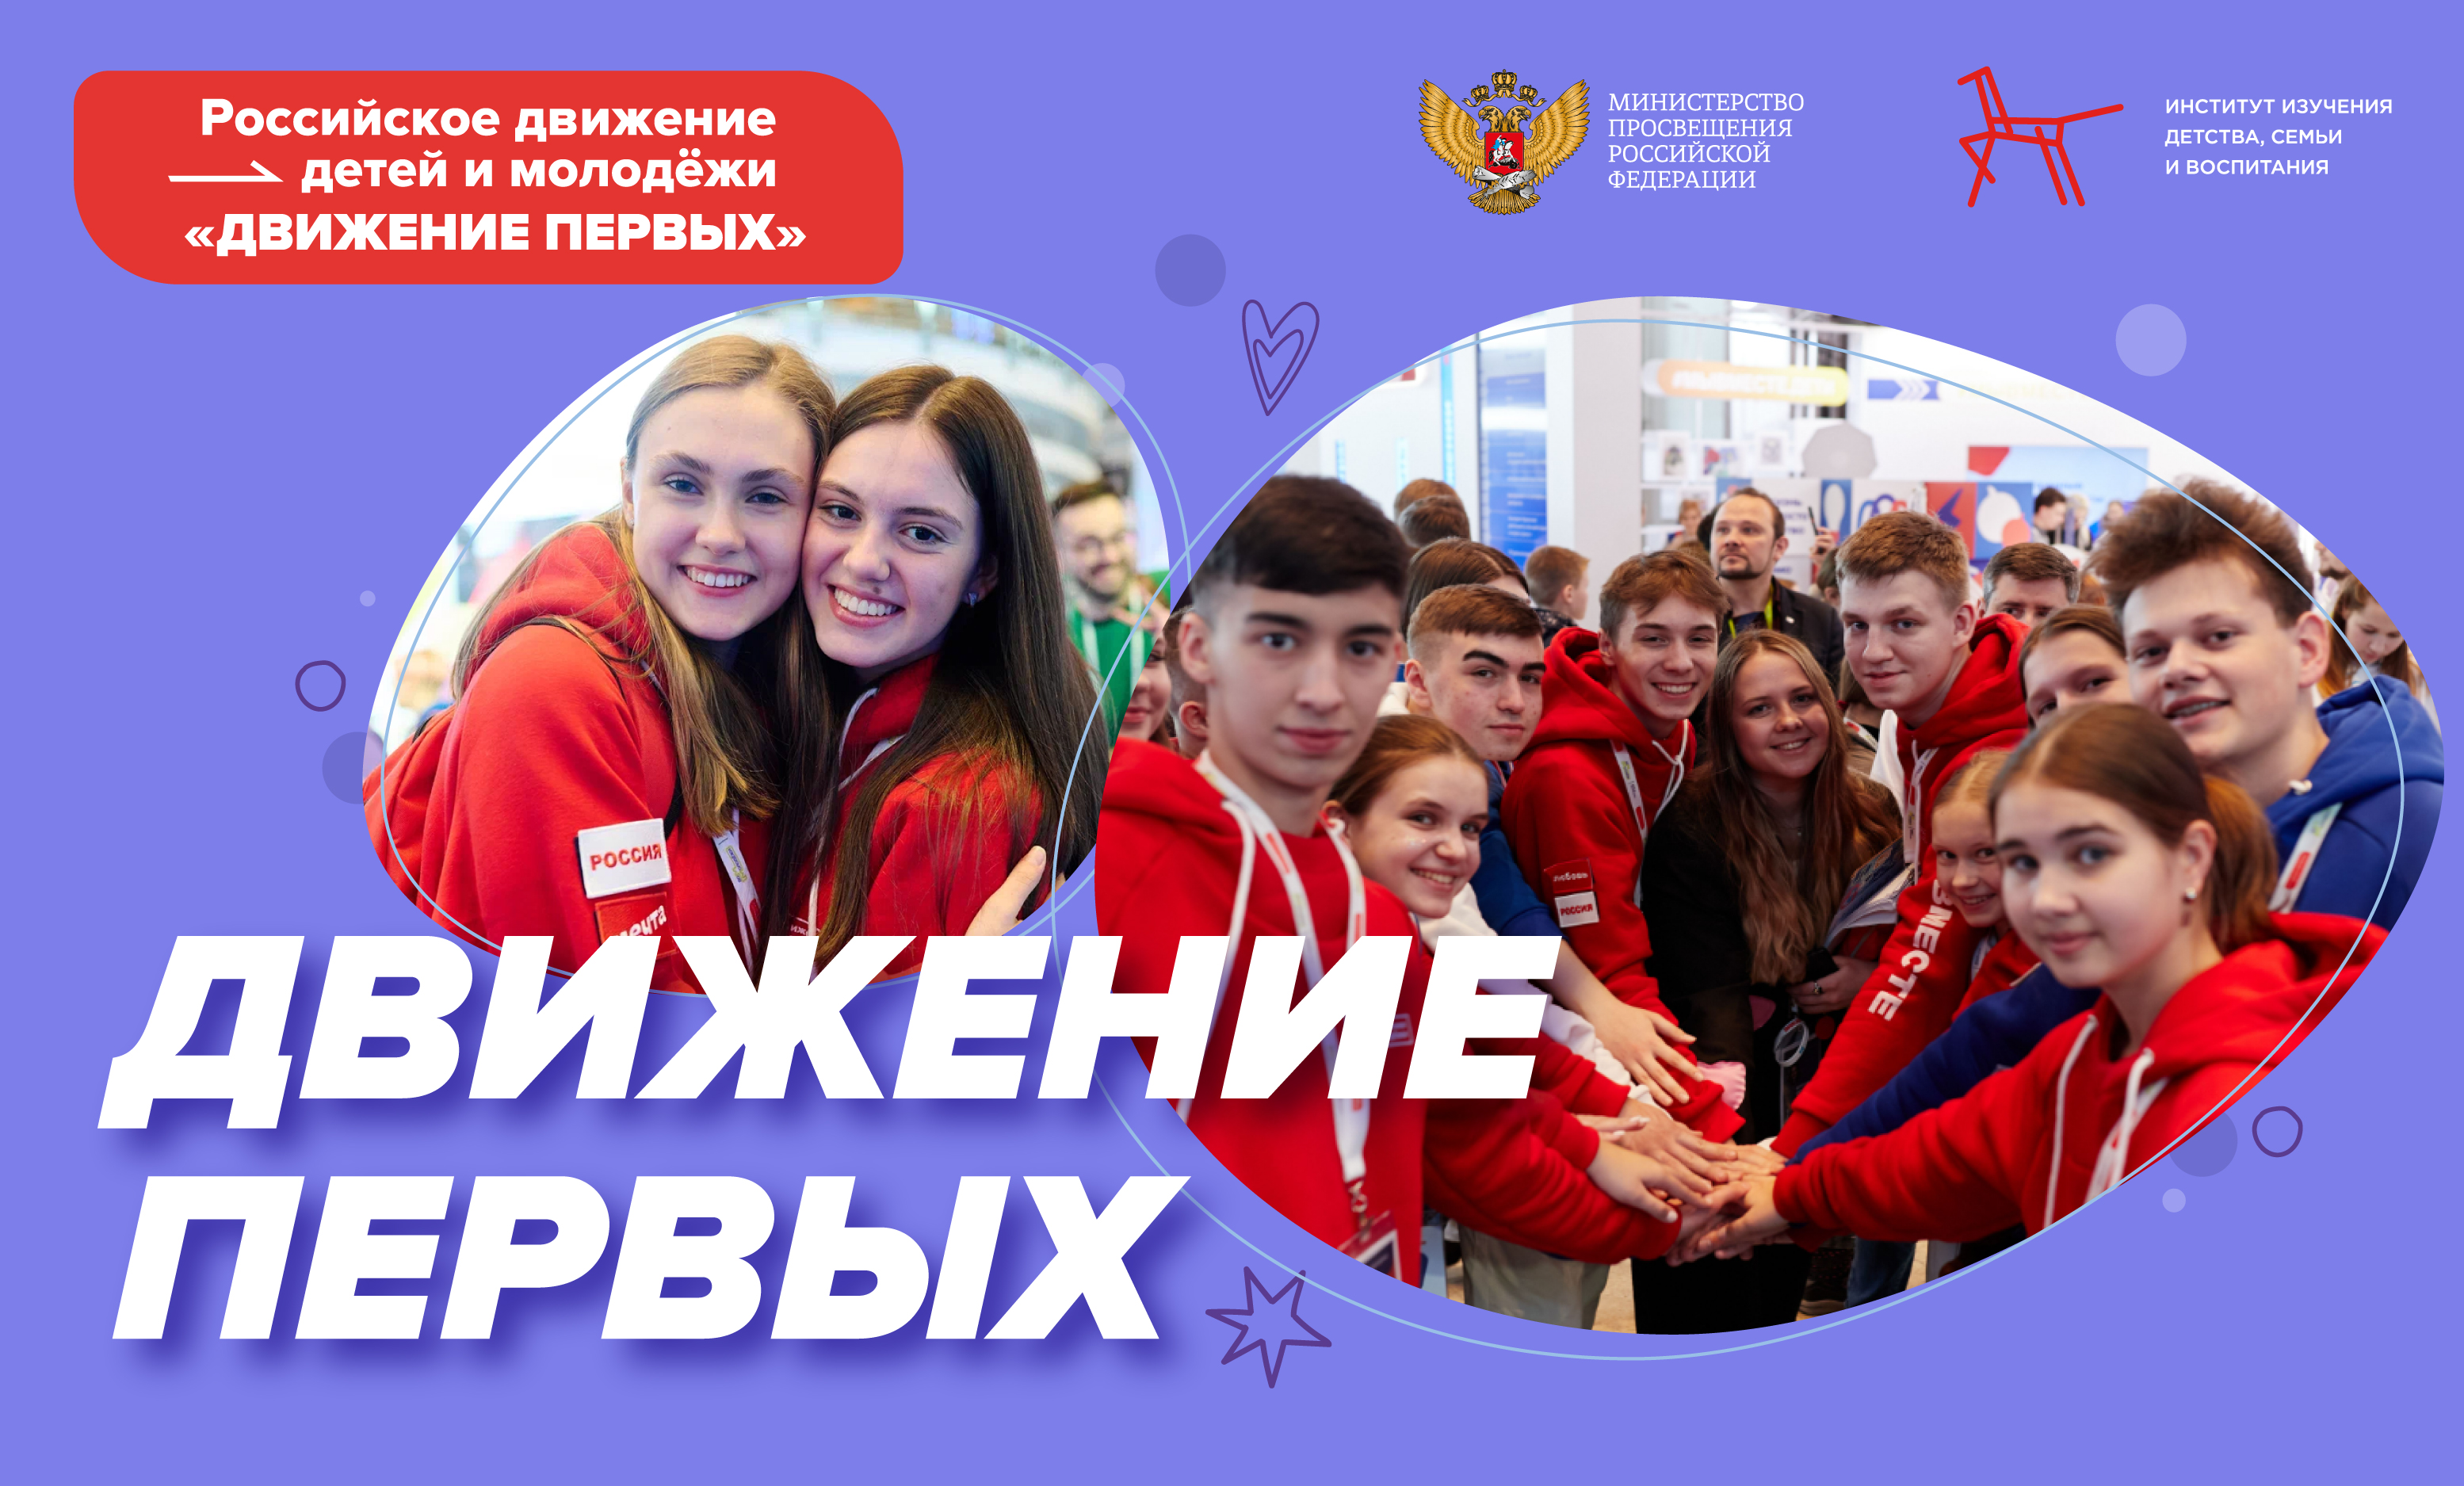 &amp;quot;Разговоры о важном&amp;quot;- Российское движение детей и молодежи &amp;quot;Движение первых&amp;quot;.